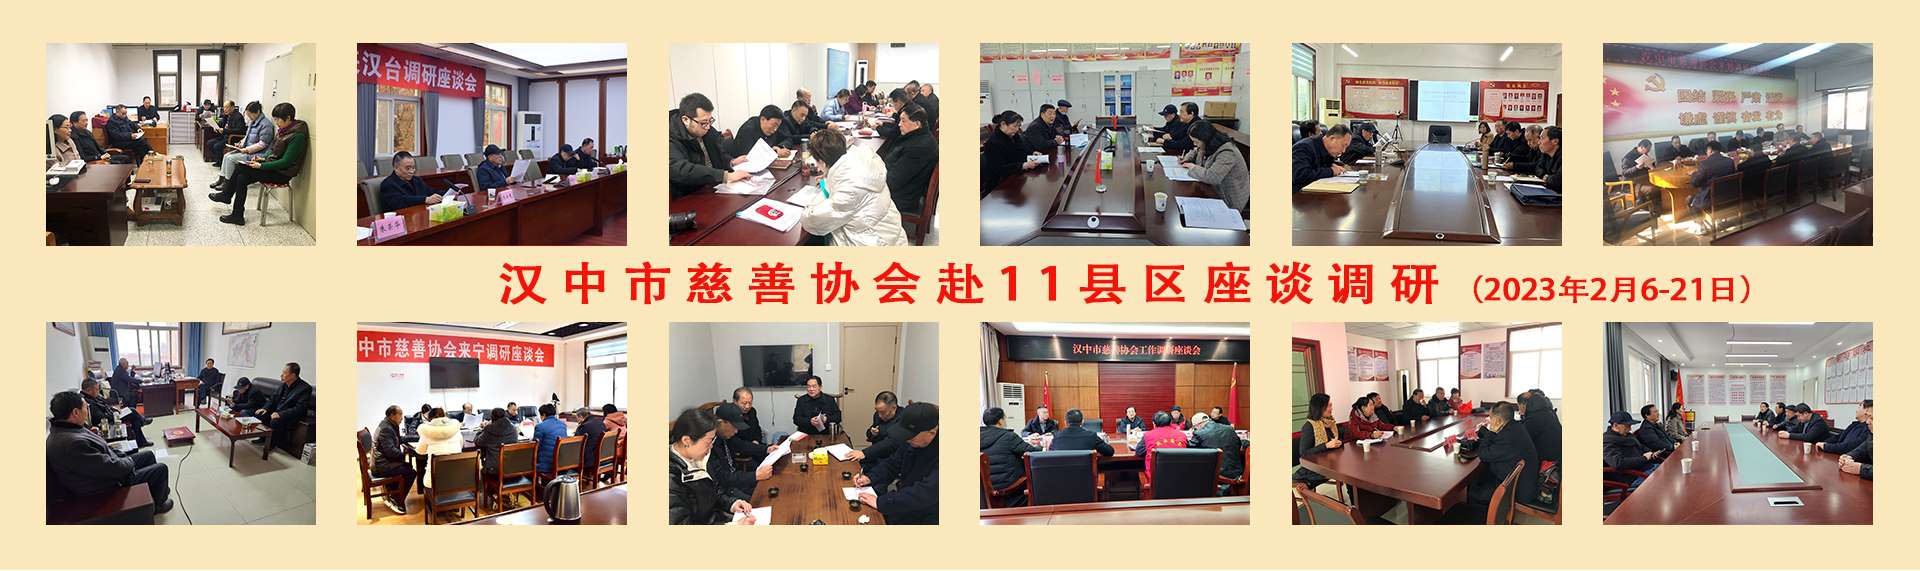 汉中市慈善协会赴11县区座谈调研